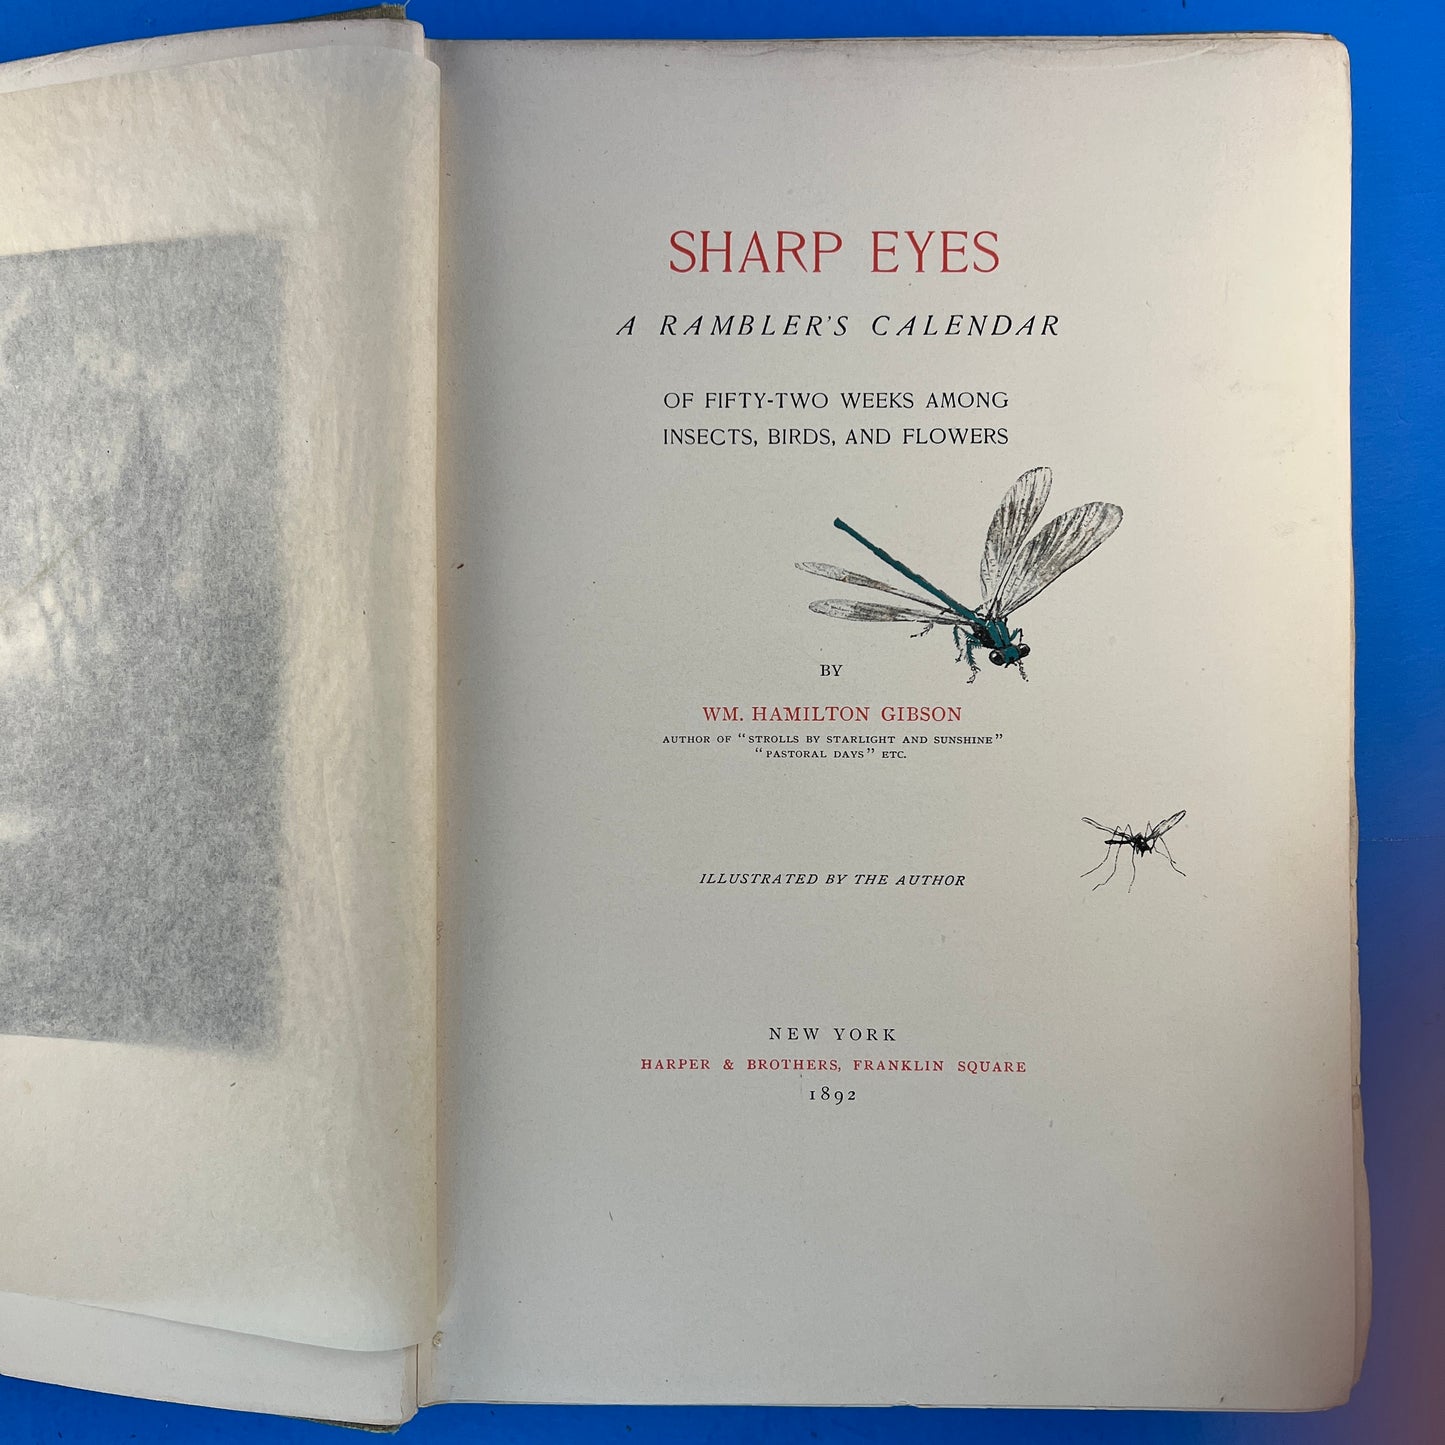 Sharp Eyes: A Rambler's Calendar